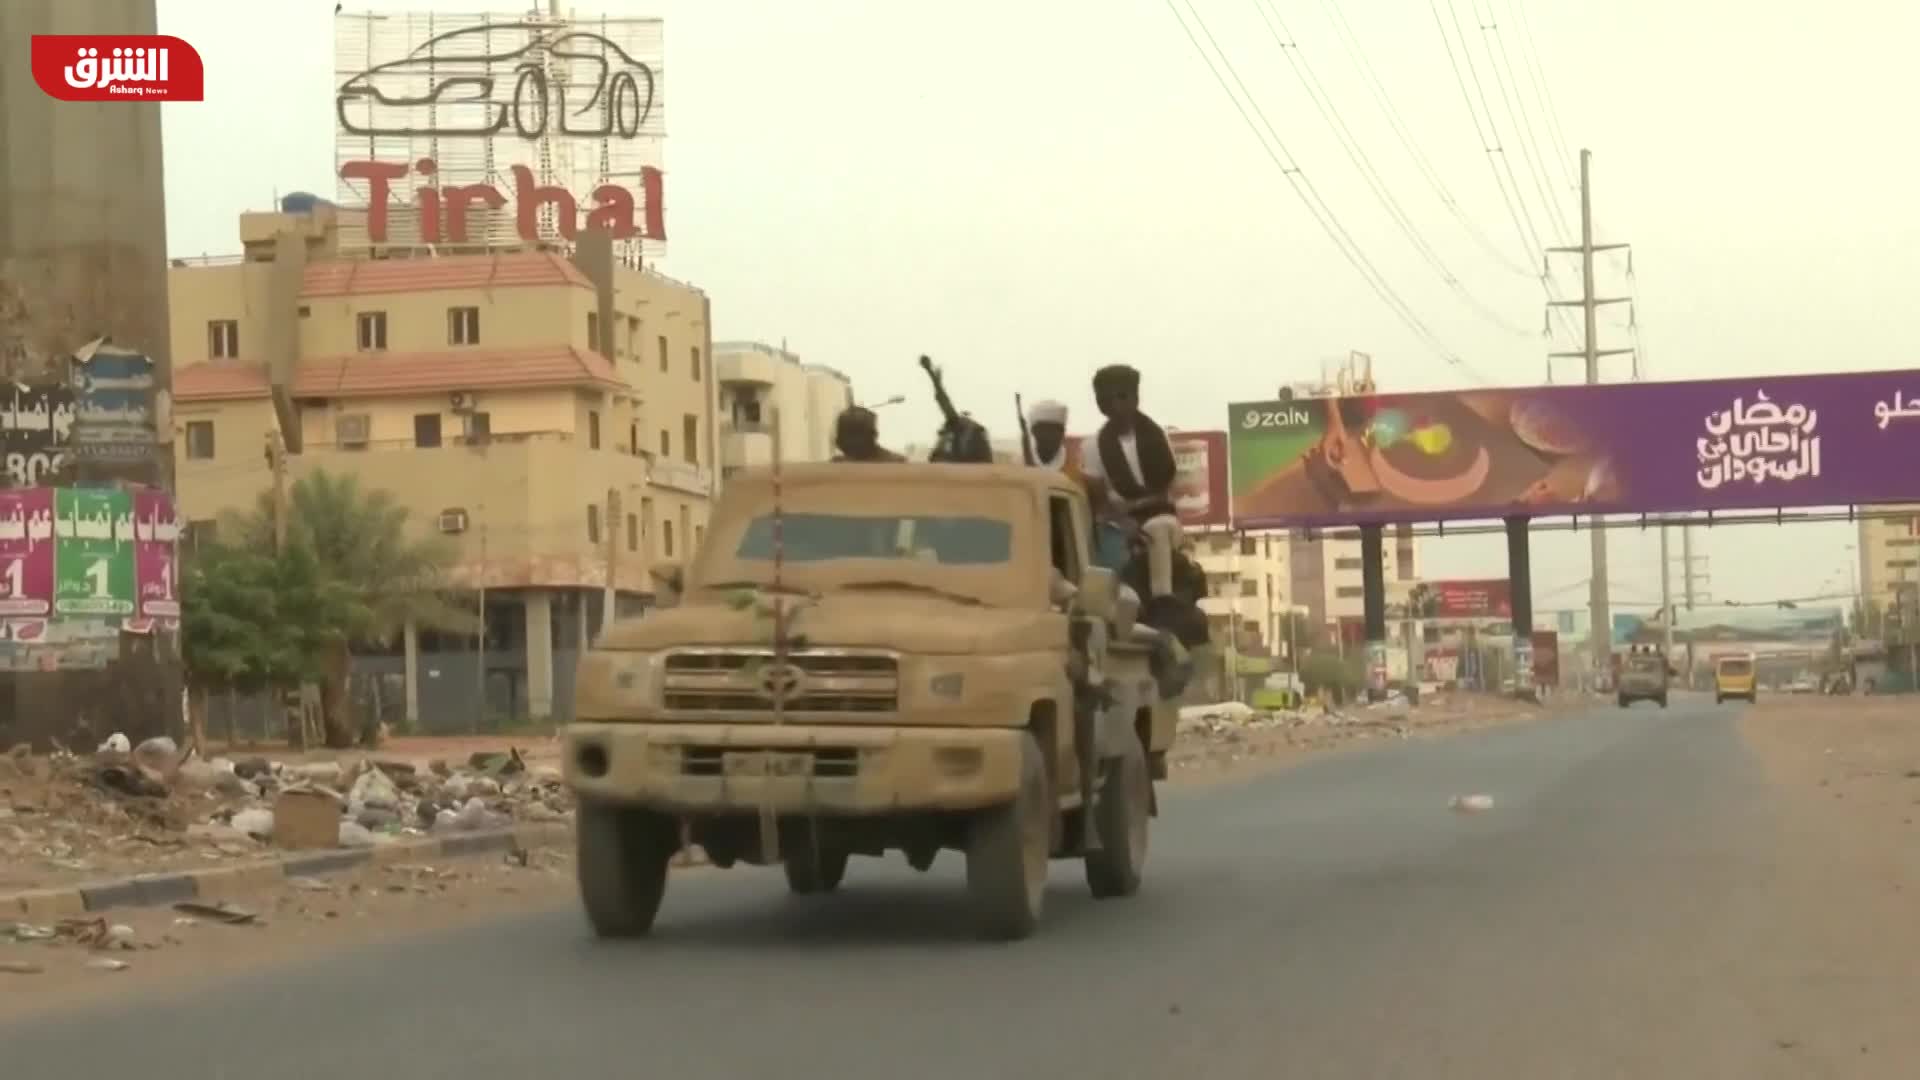 مراسل الشرق: استمرار الاشتباكات بين طرفي النزاع في مدينة الخرطوم